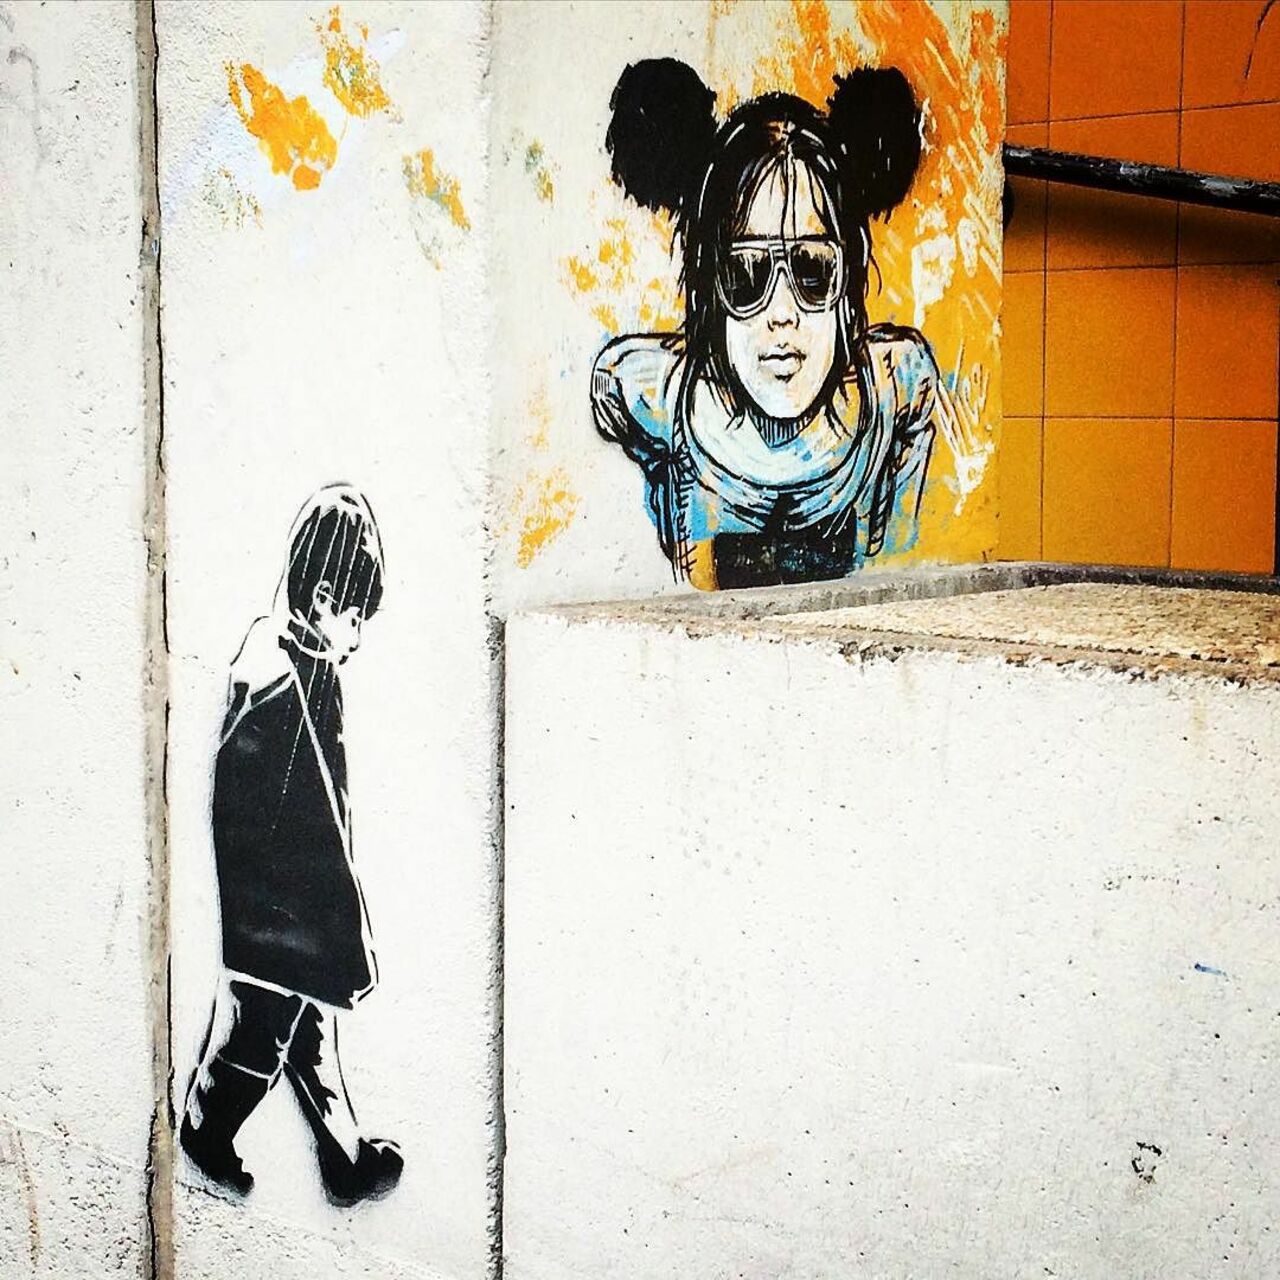 #Paris #graffiti photo by @julosteart http://ift.tt/1GBjGTd #StreetArt https://t.co/63qhdrcTVD